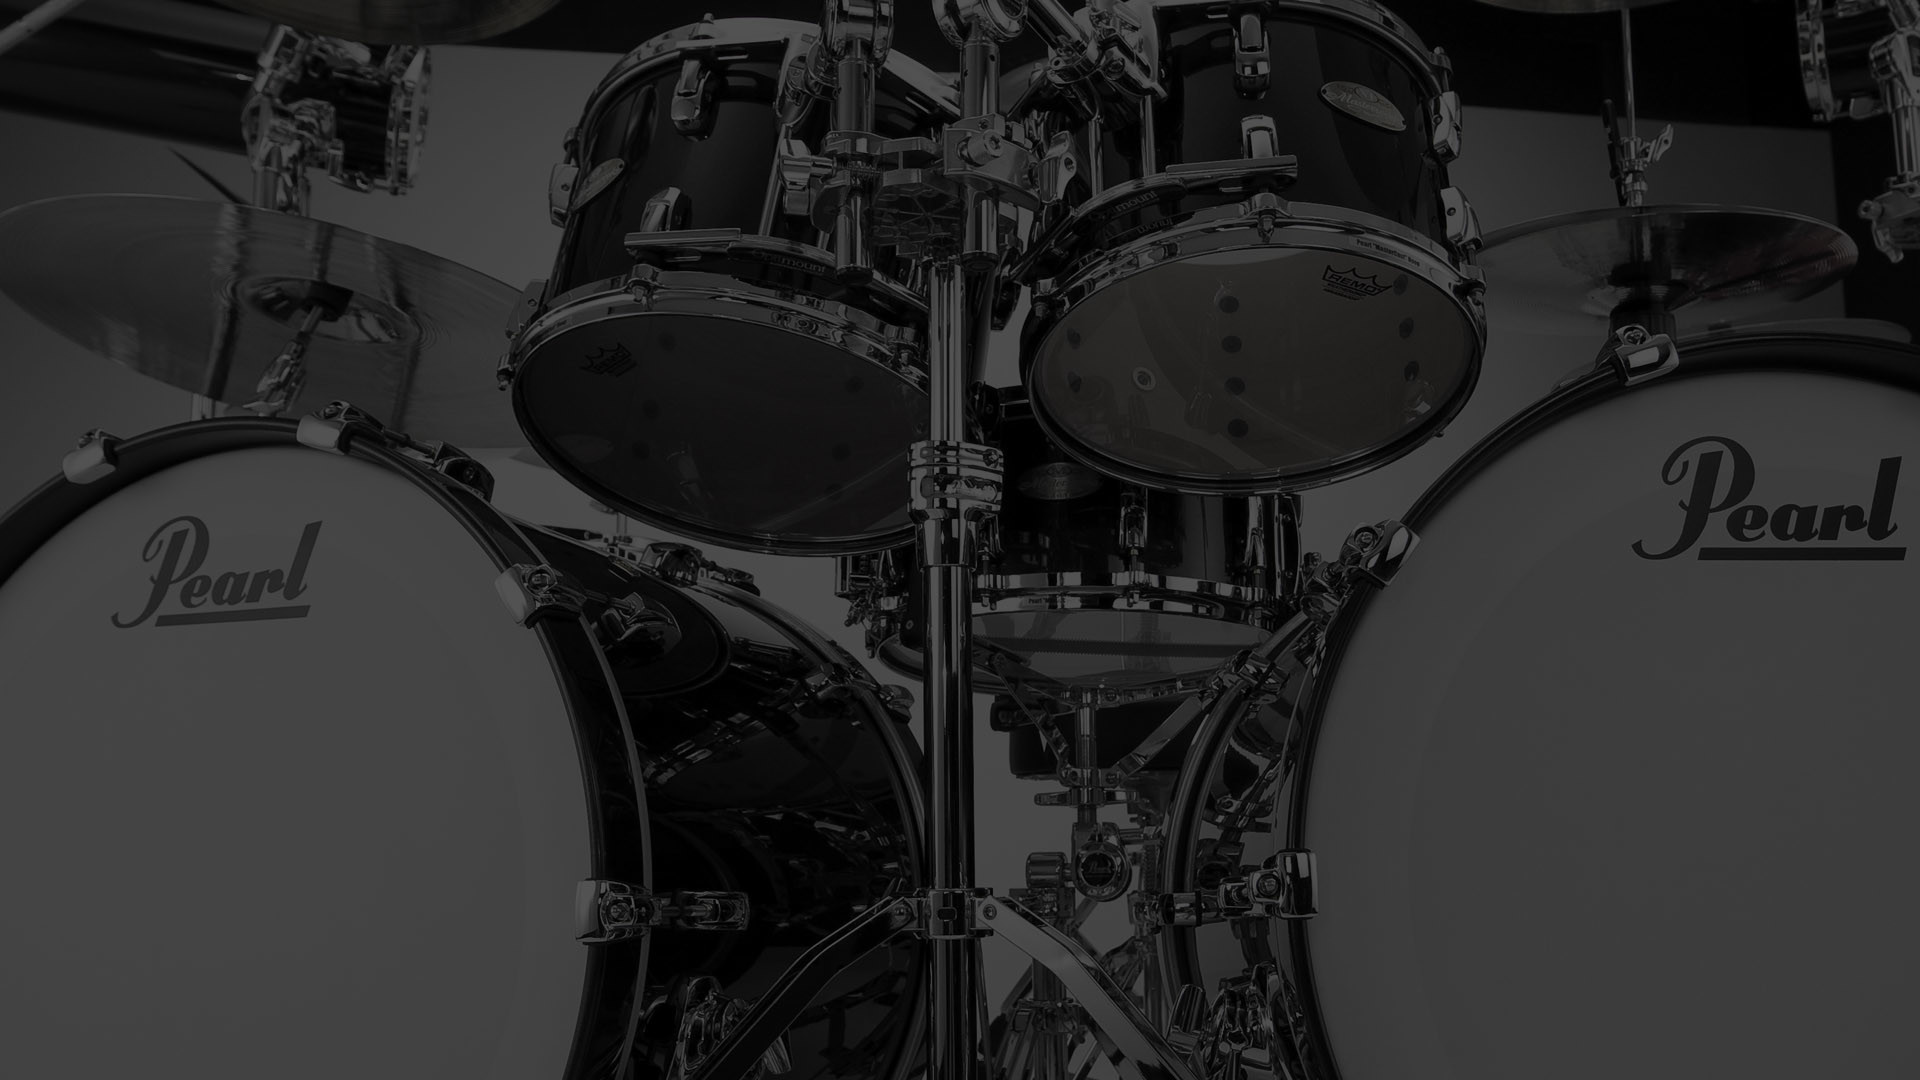 1920x1080 Pearl Drums